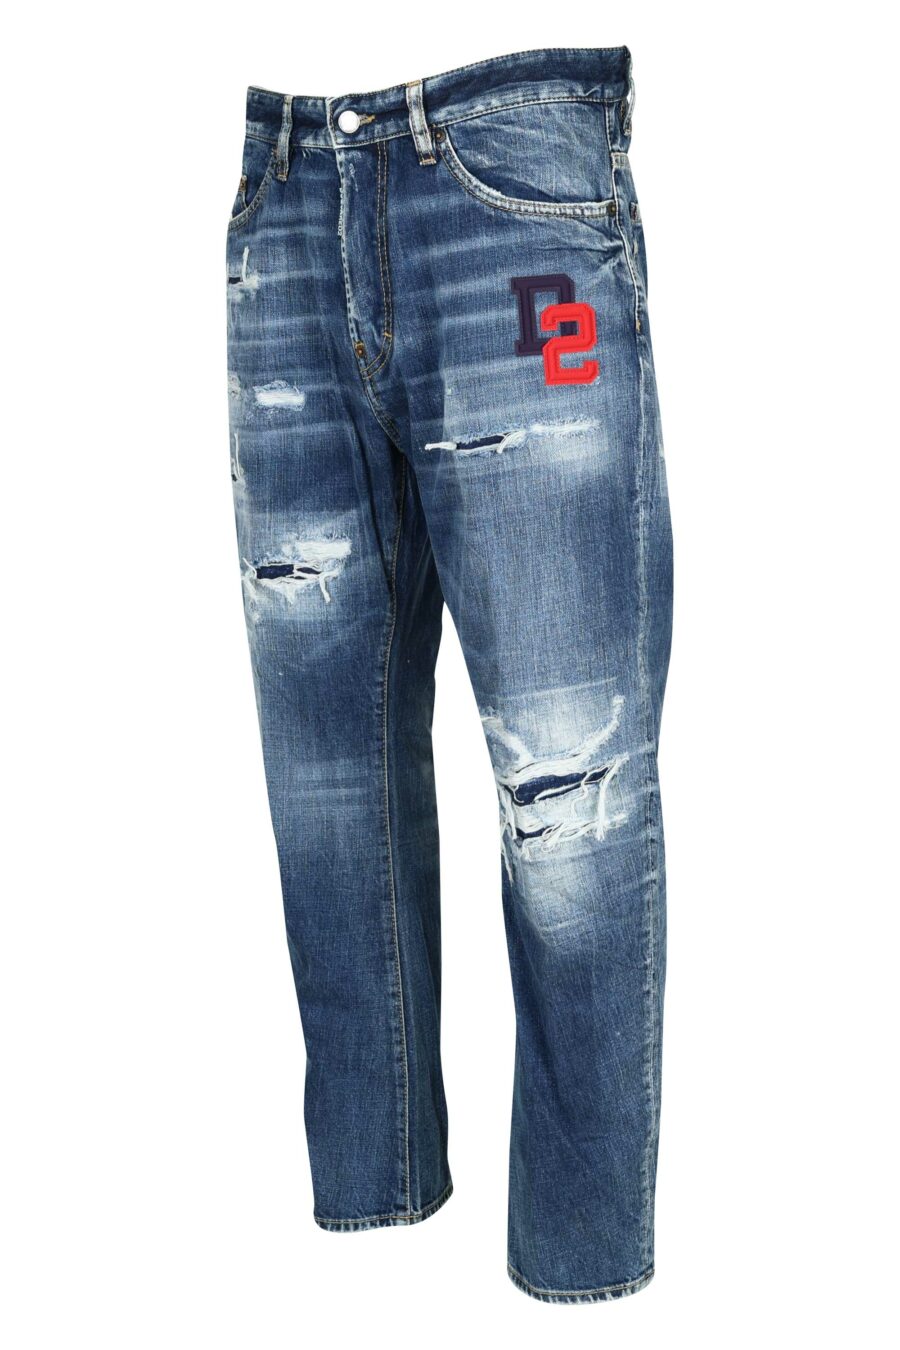 Pantalón vaquero azul "bro jeans" con logo "d2" - 8054148338572 1